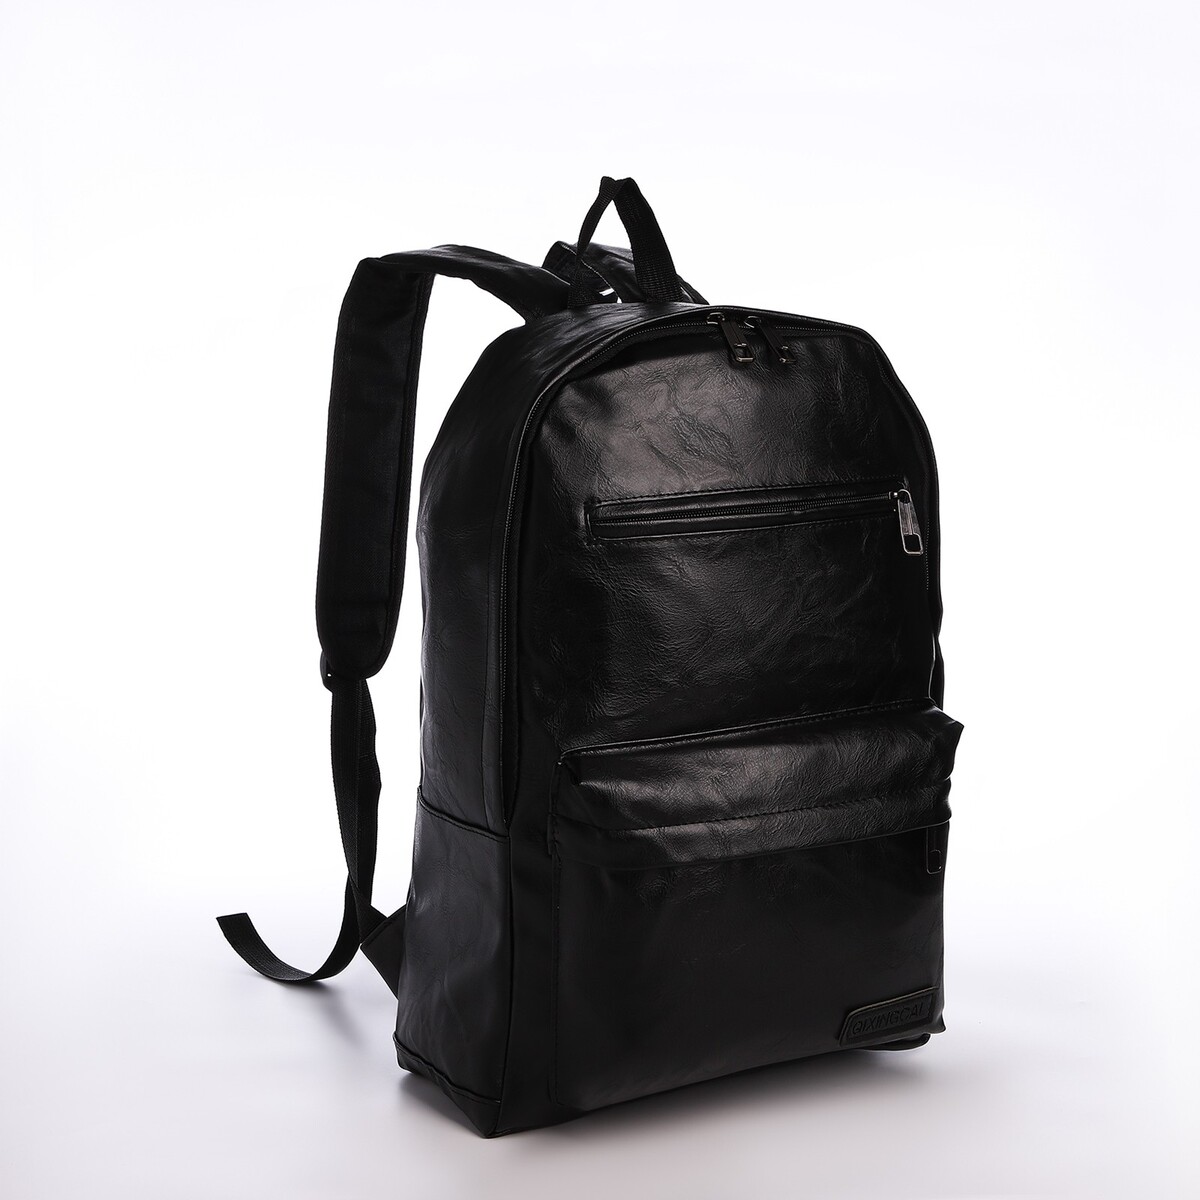 Рюкзак городской из искусственной кожи на молнии, 4 кармана, цвет черный pixie рюкзак городской 267100